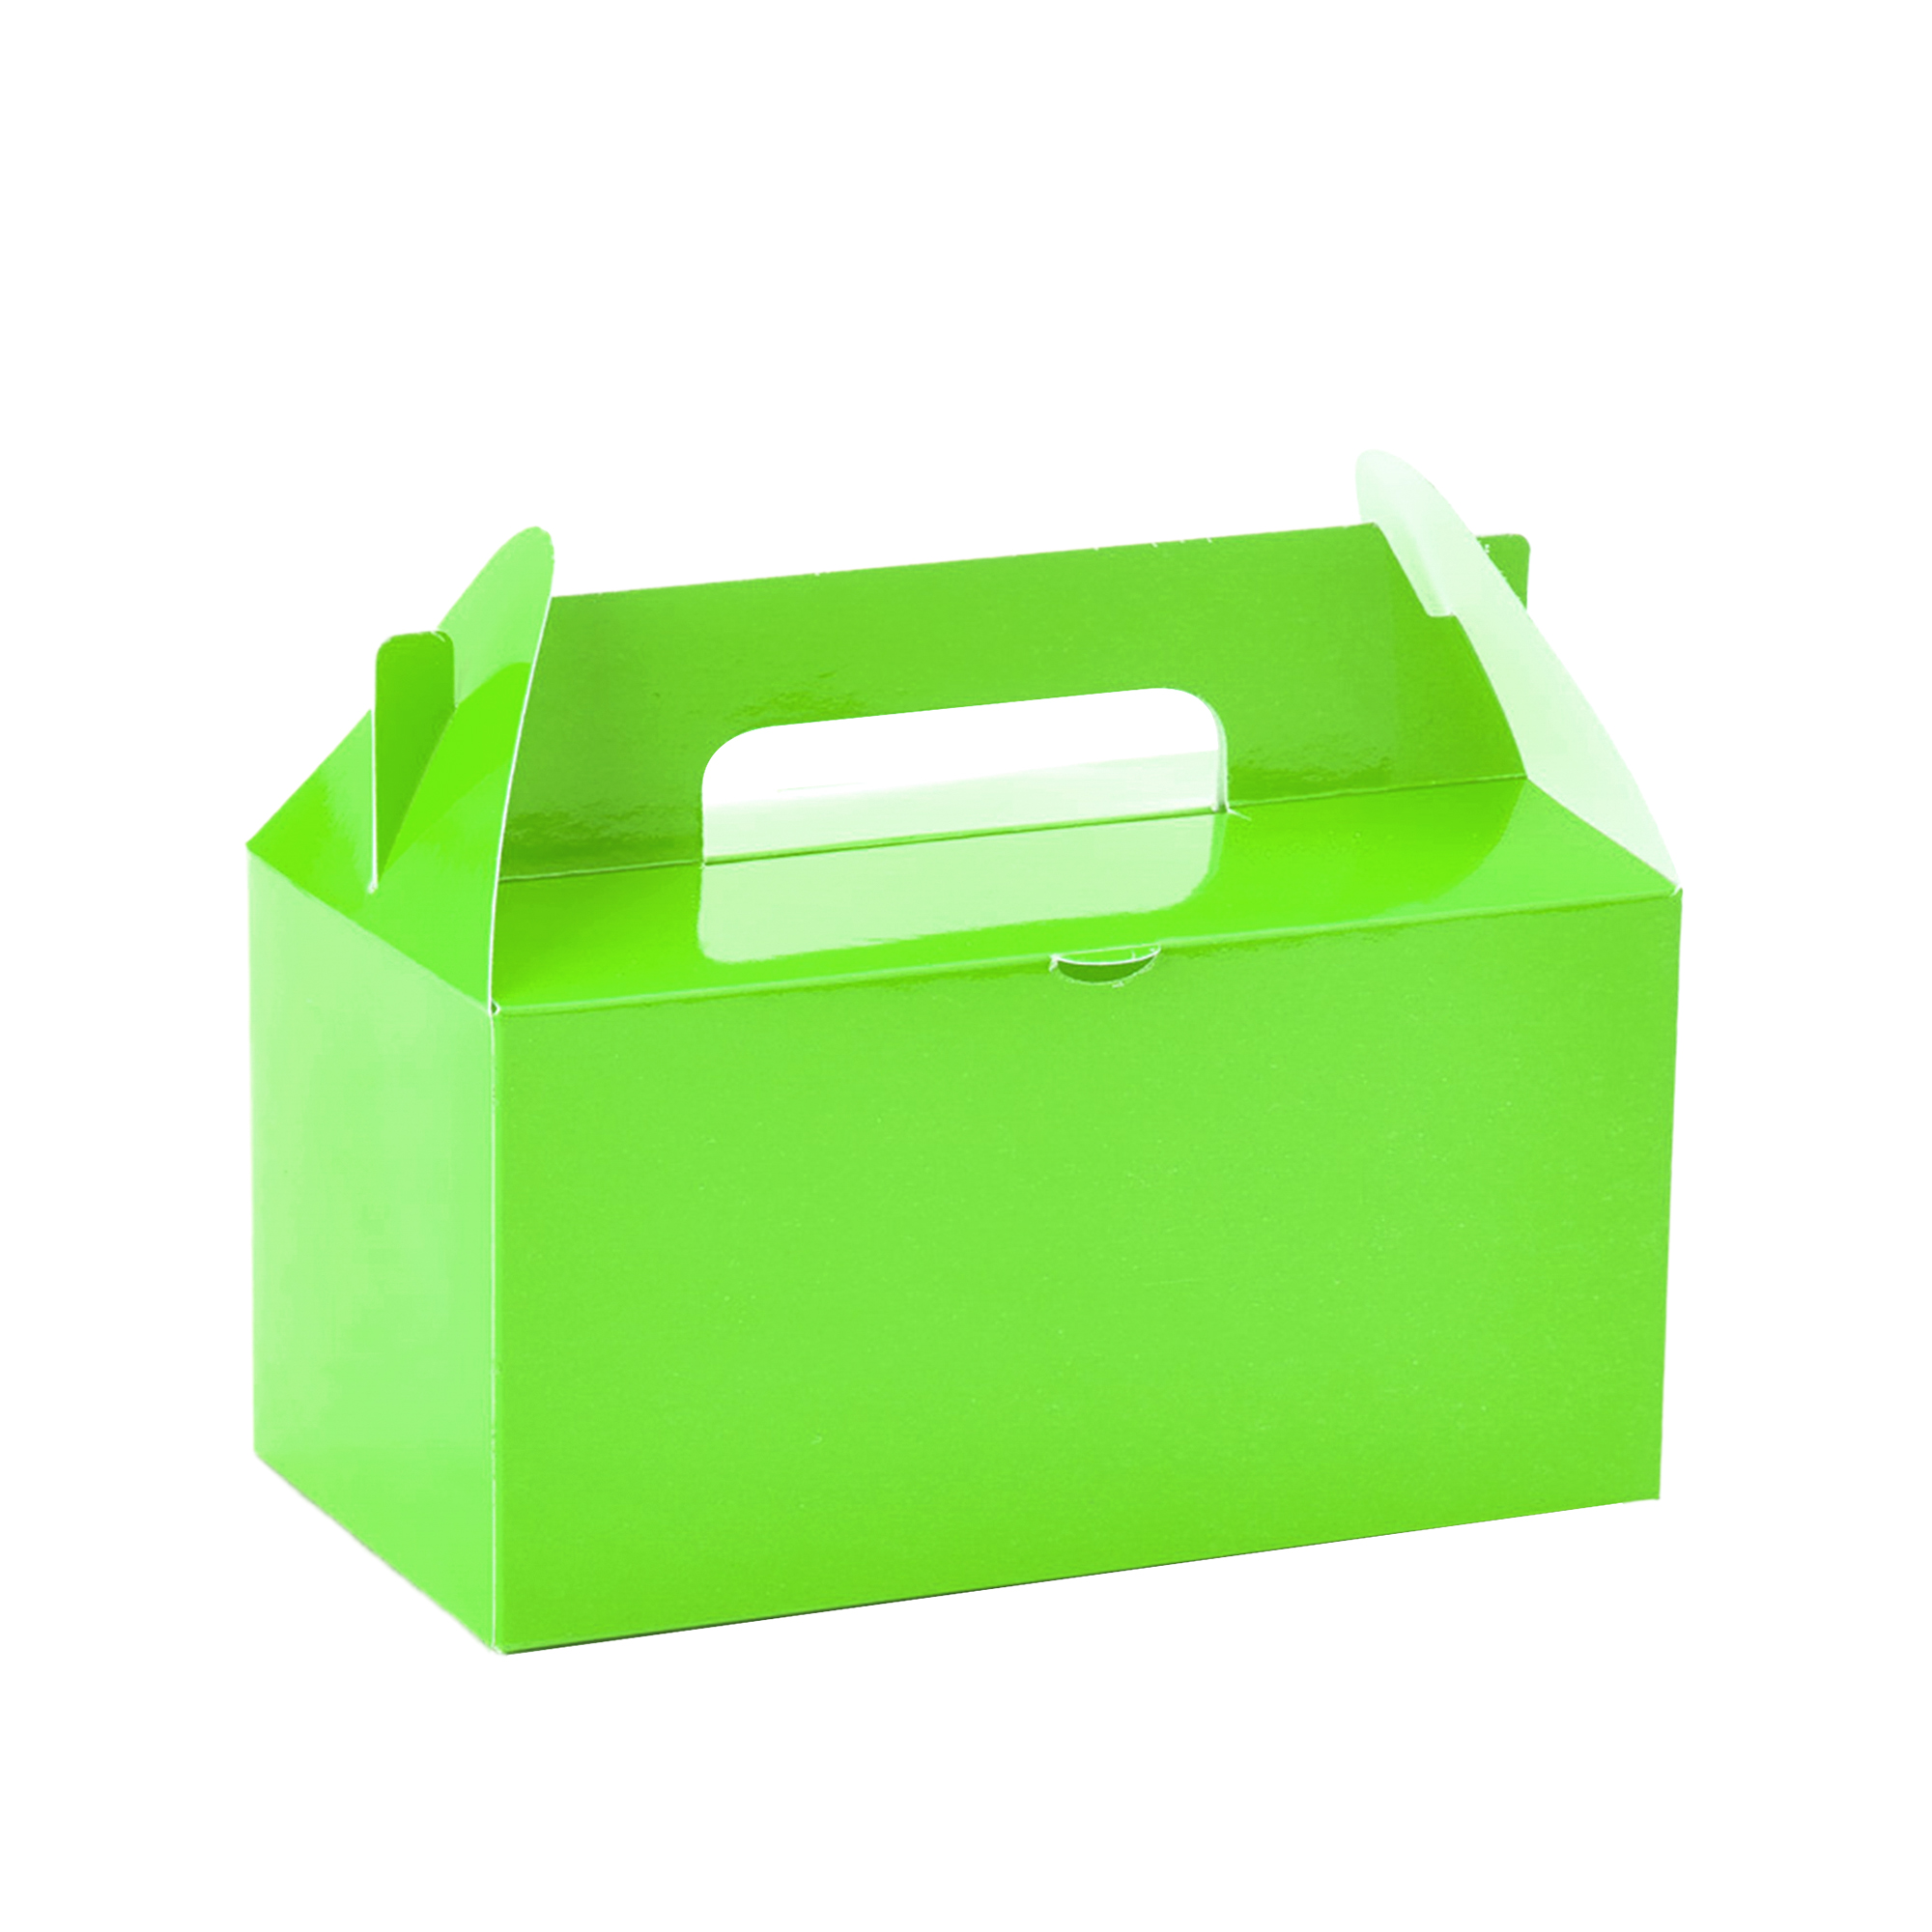 Takeout Box 12pcs/bag - Apple Green